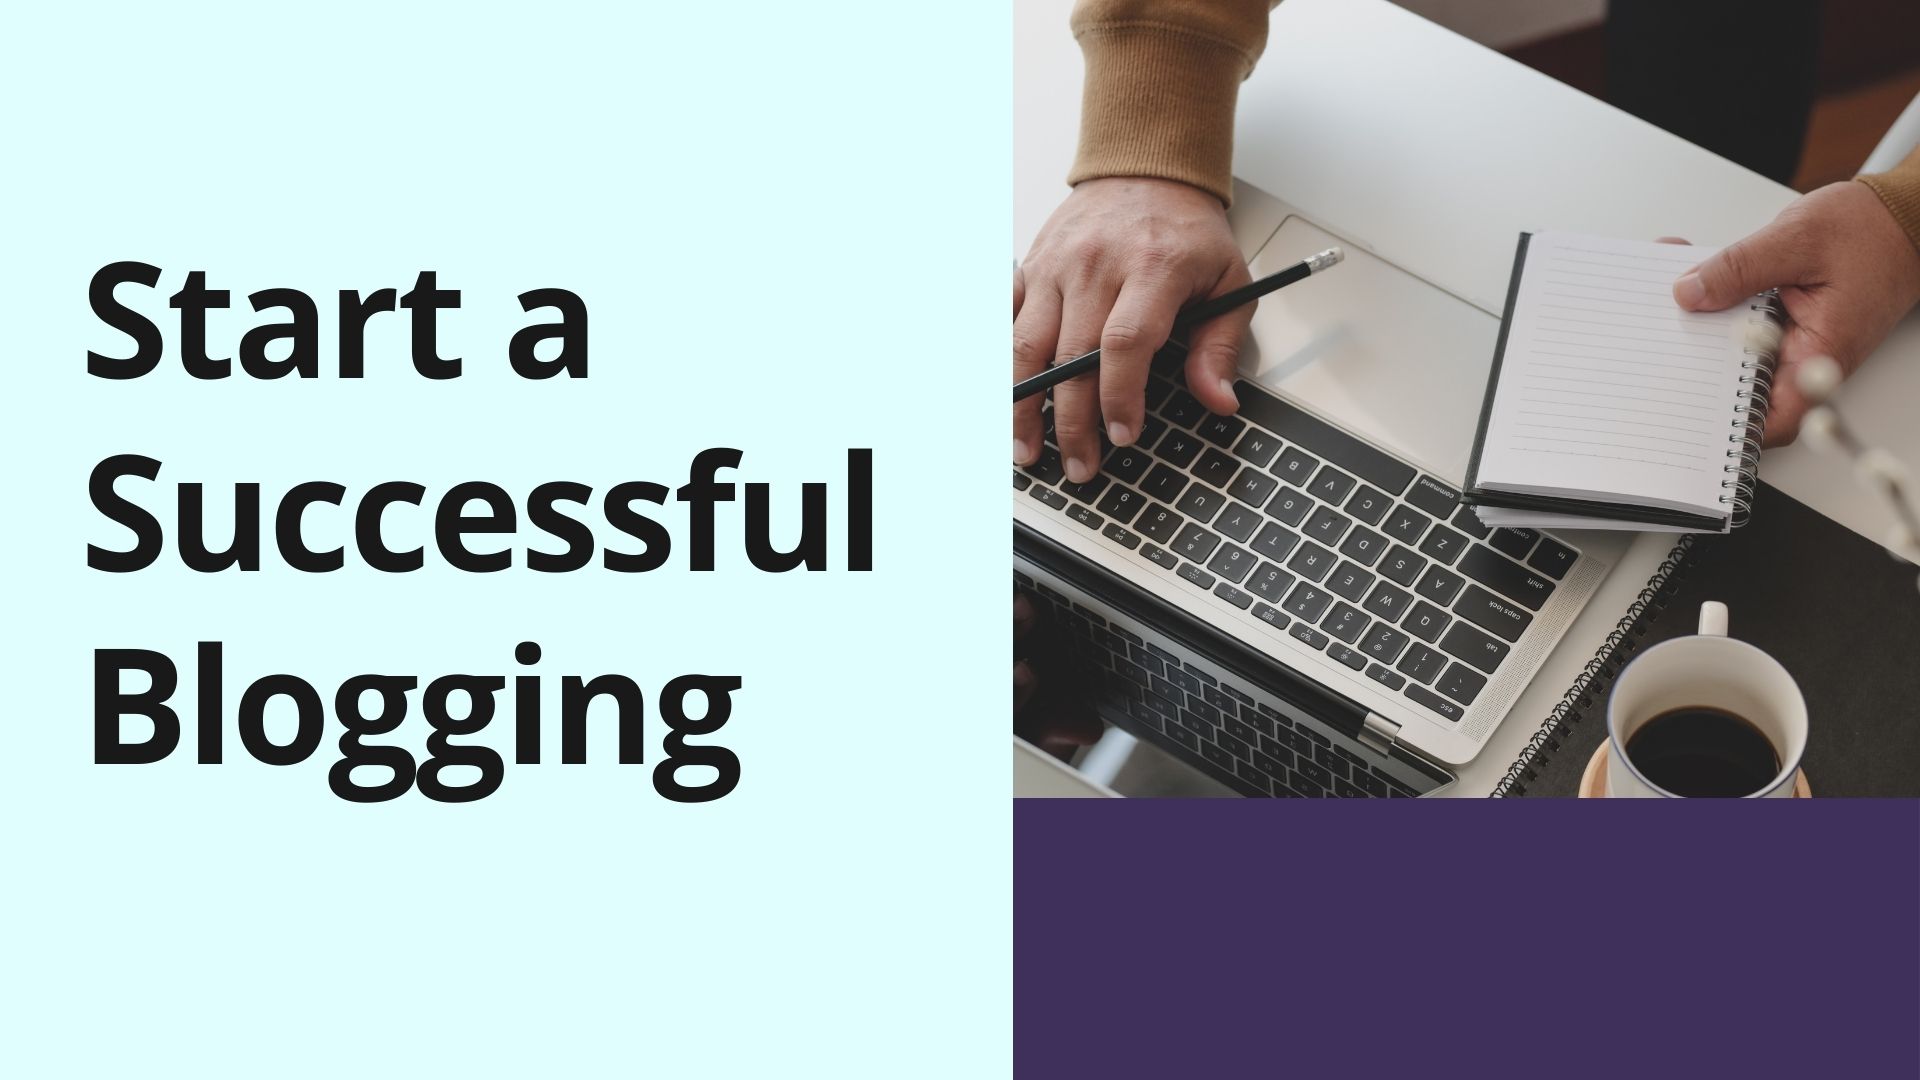 Start a Successful Blogging